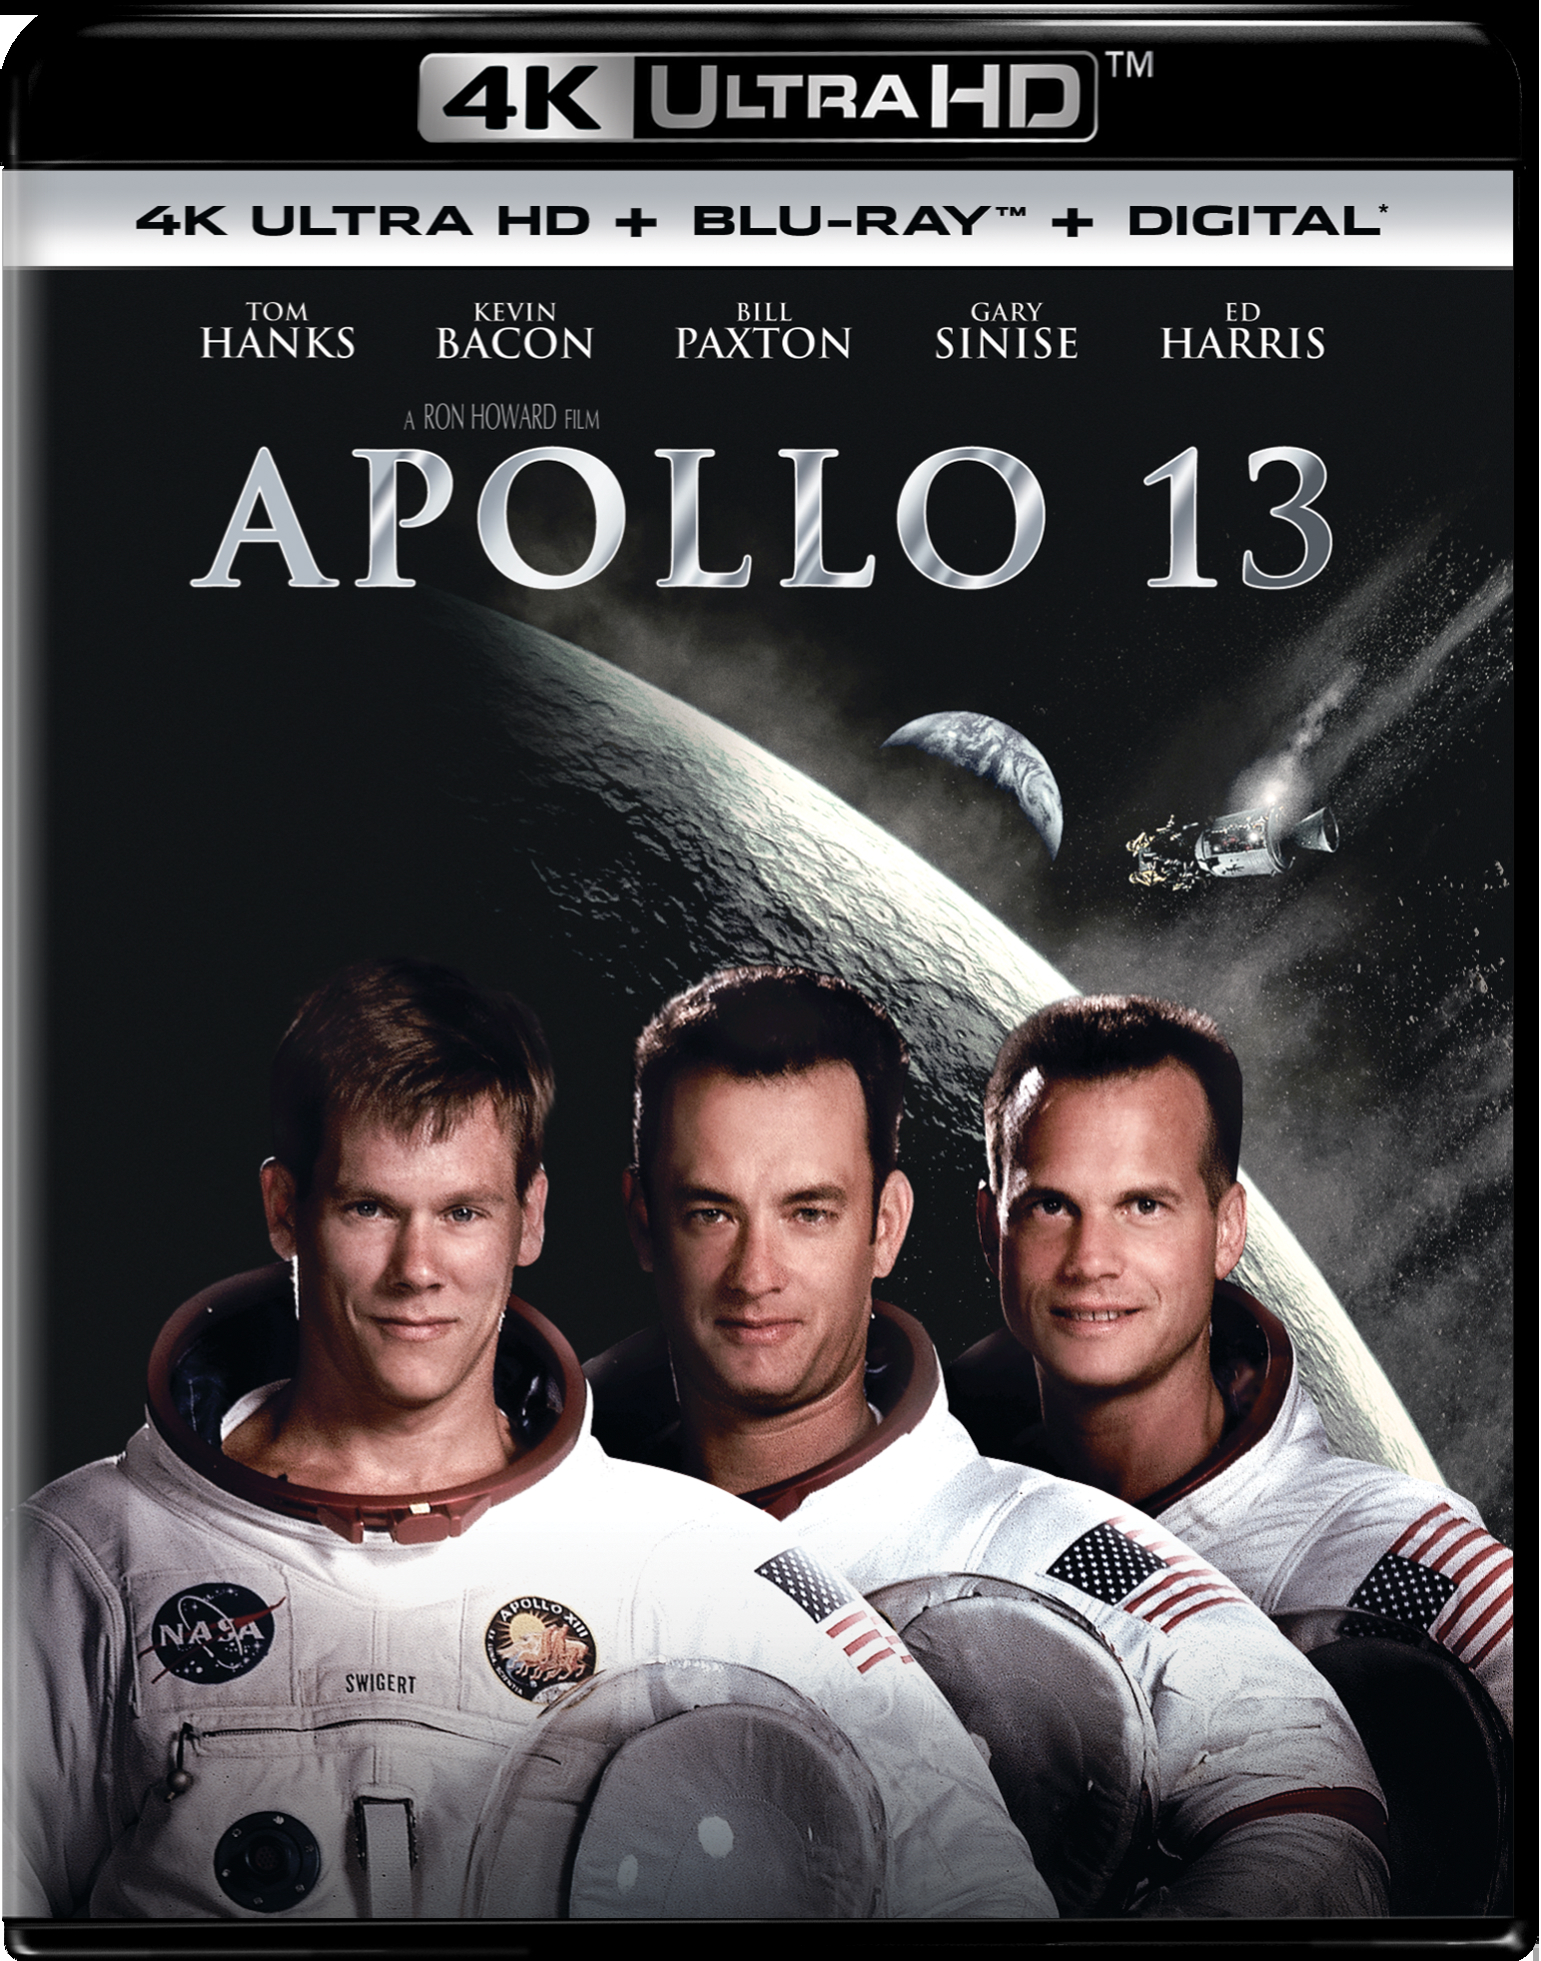 Apollo 13 (4K Ultra HD) - UHD [ 1995 ]  - Drama Movies On 4K Ultra HD Blu-ray - Movies On GRUV